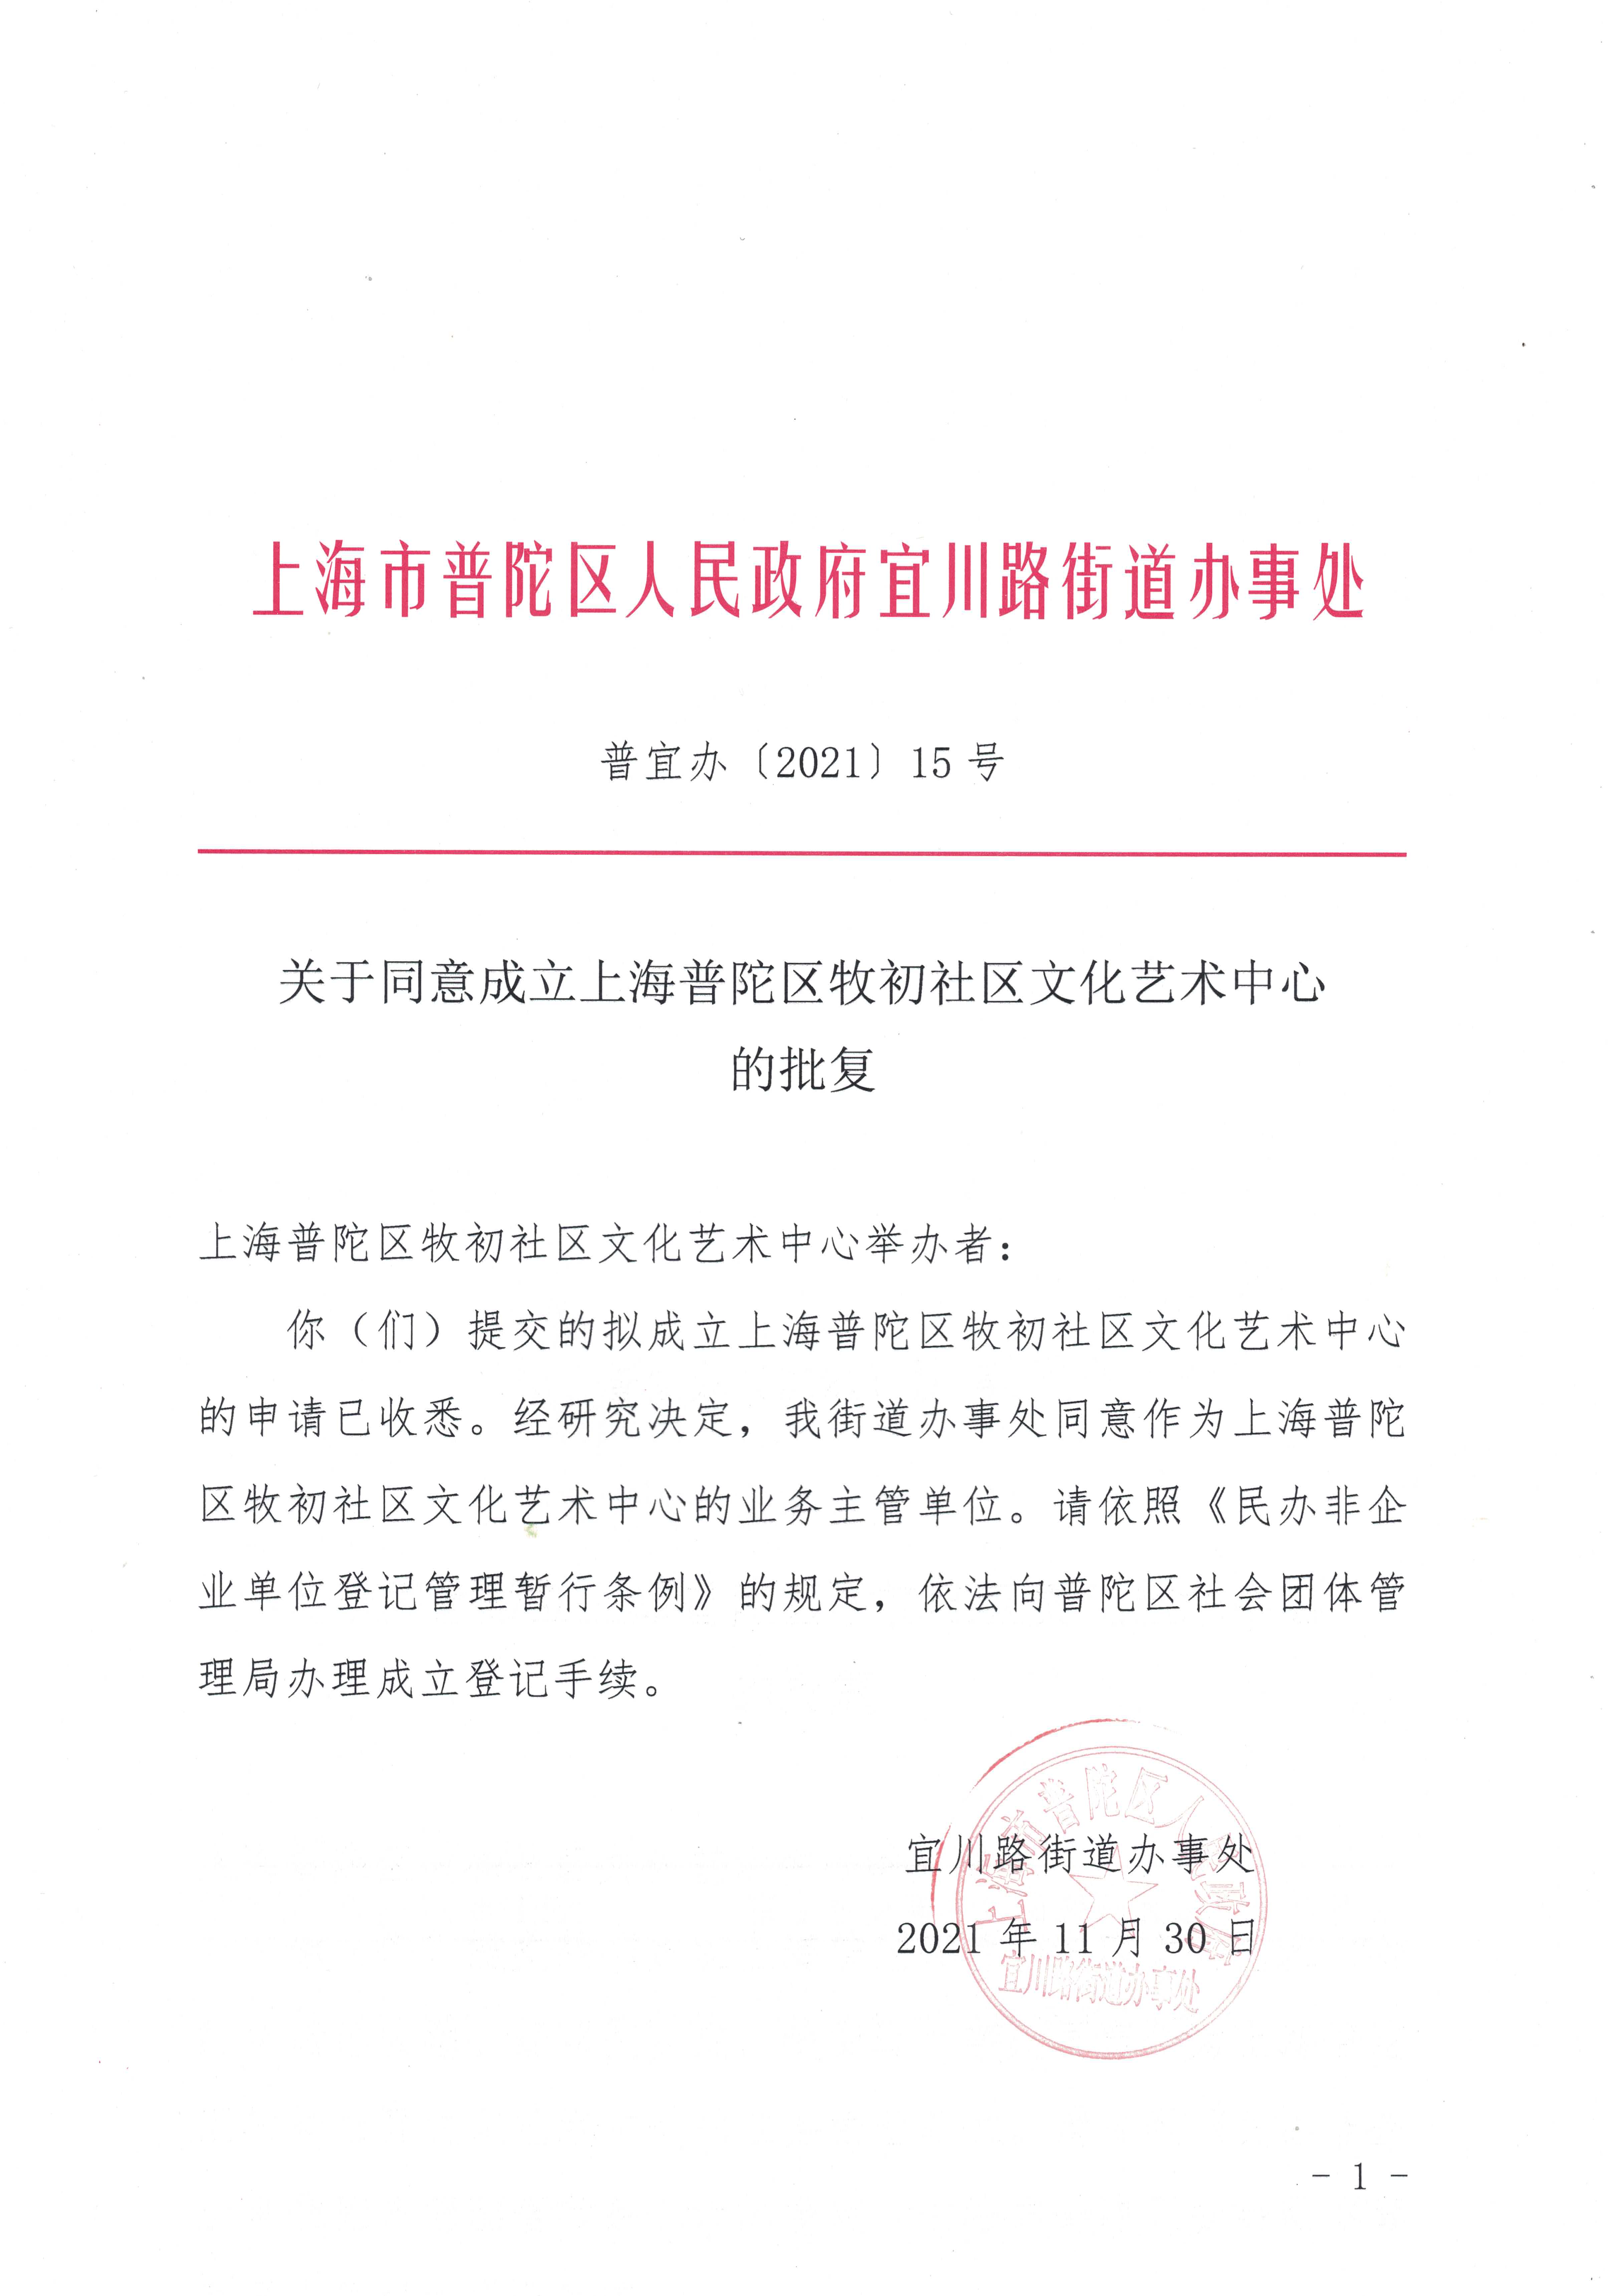 关于同意成立上海普陀区牧初社区文化艺术中心的批复